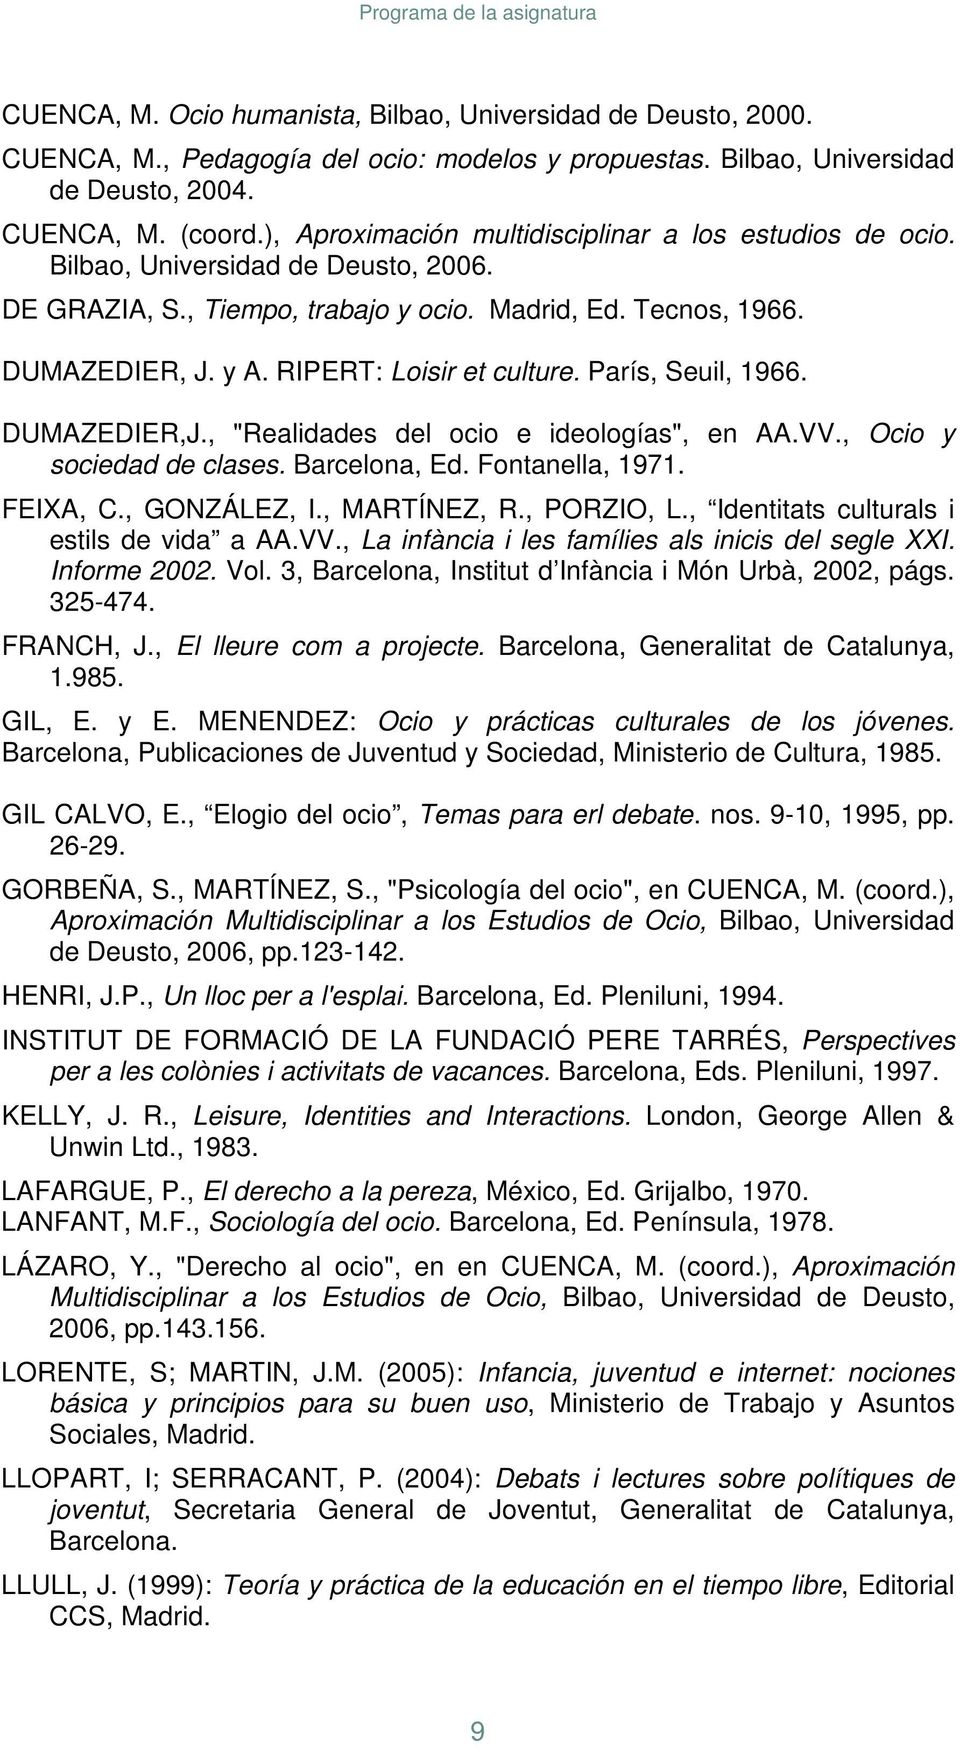 RIPERT: Loisir et culture. París, Seuil, 1966. DUMAZEDIER,J., "Realidades del ocio e ideologías", en AA.VV., Ocio y sociedad de clases. Barcelona, Ed. Fontanella, 1971. FEIXA, C., GONZÁLEZ, I.